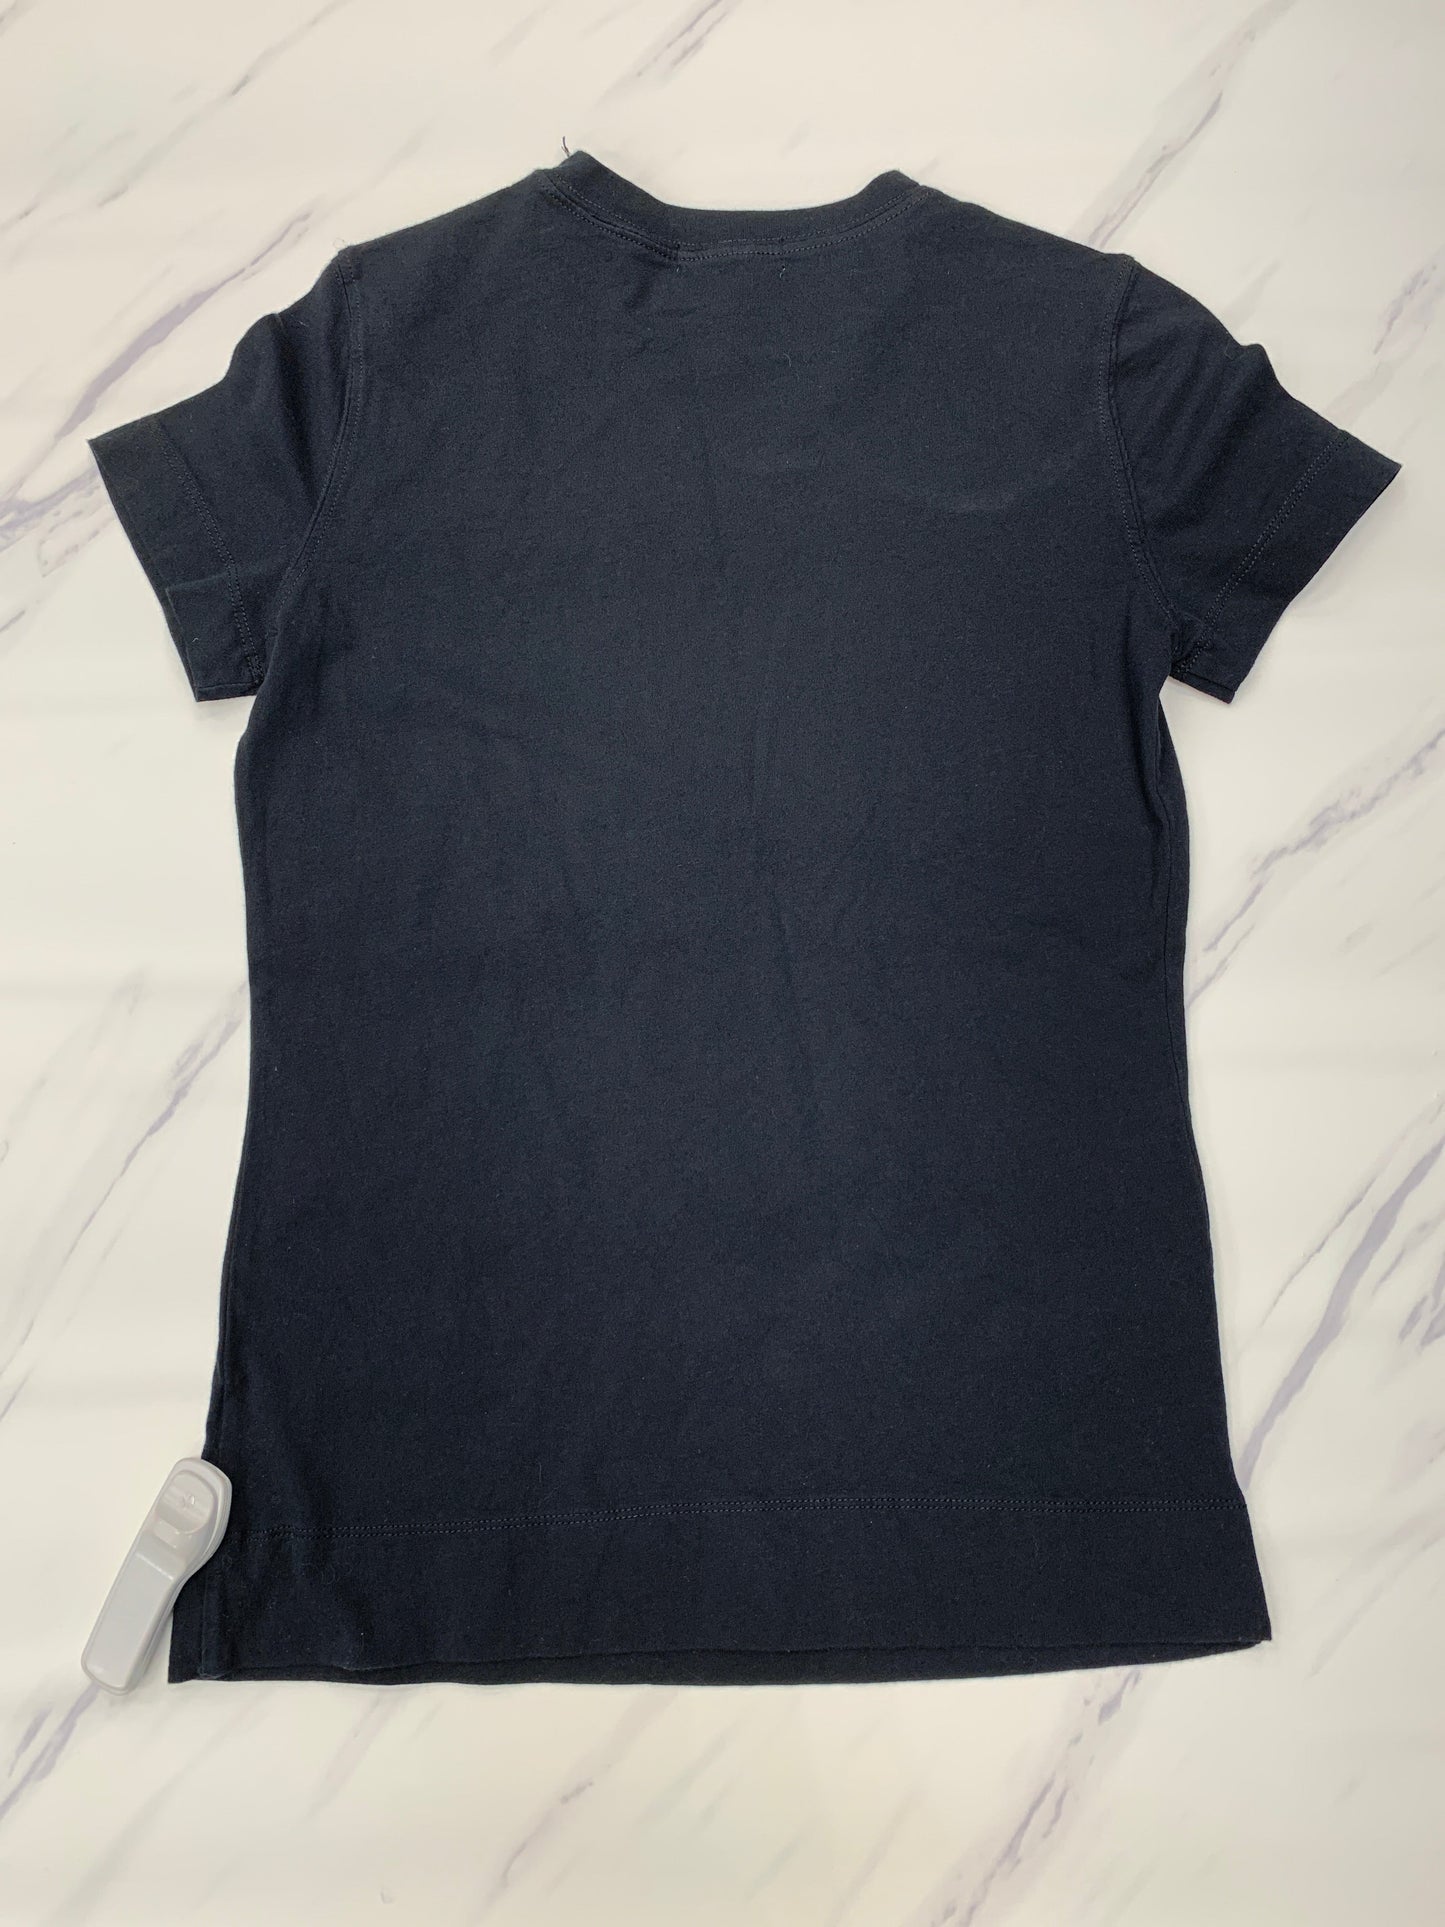 Black Top Short Sleeve Lauren By Ralph Lauren, Size Xs